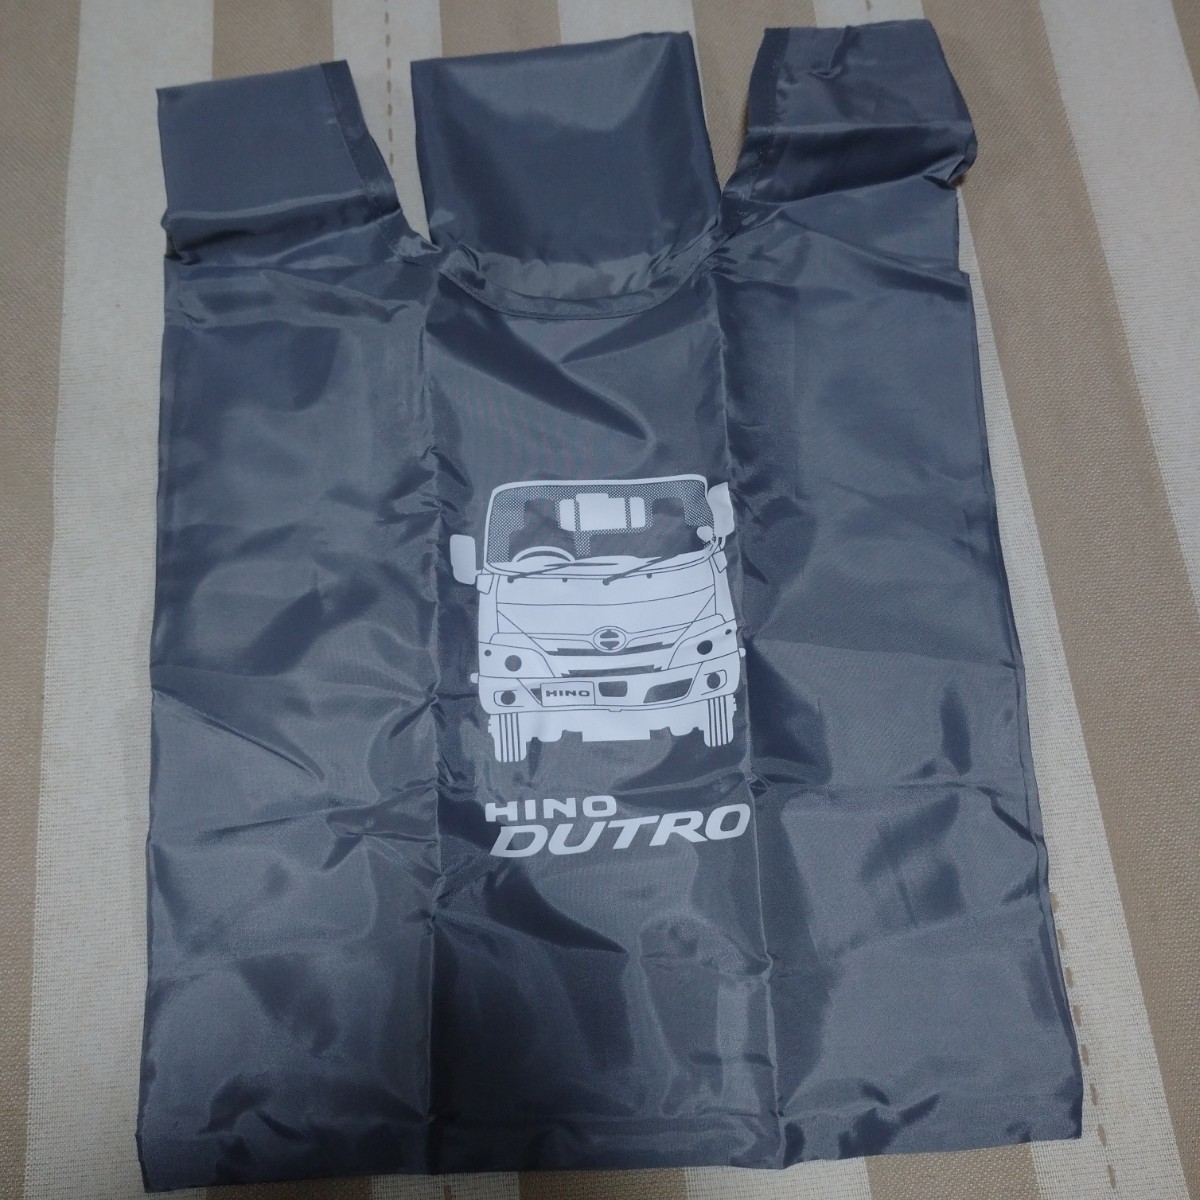  saec HINO Dutro эко-сумка сумка место хранения dutro товары коллекция эмблема Logo не продается Novelty ограничение bag collection ②